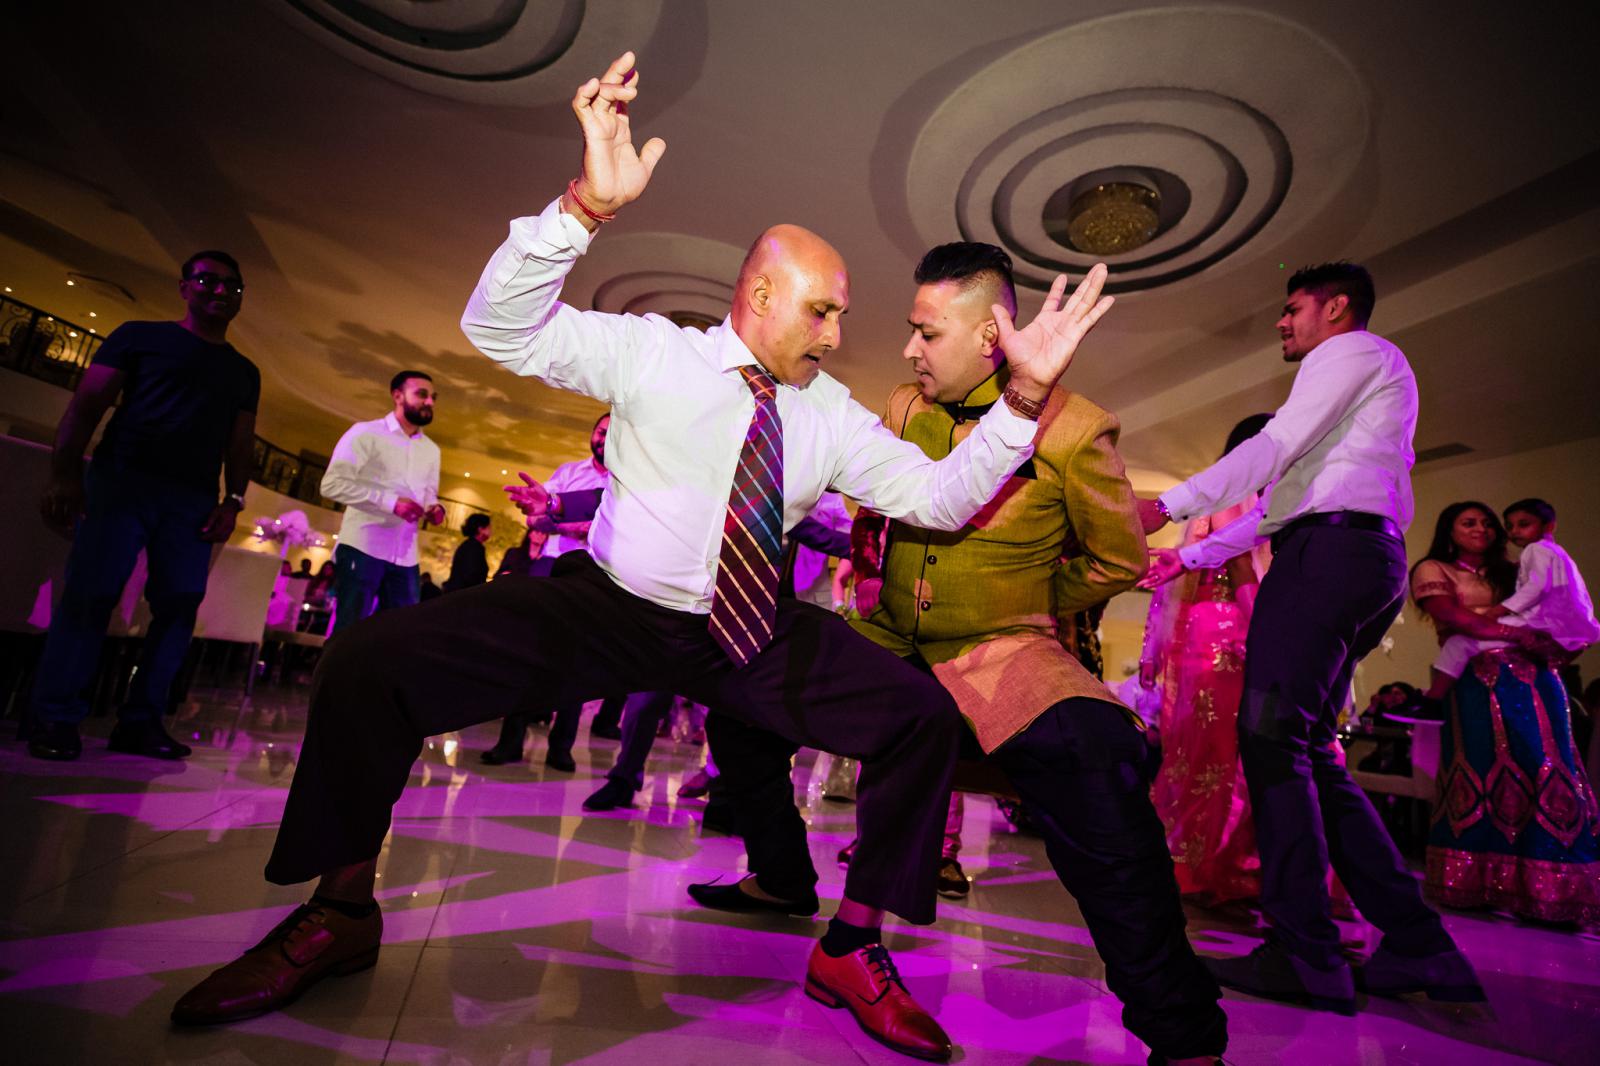 Hindoestaans trouwfeest gaat los door trouwfotograaf rey events almere